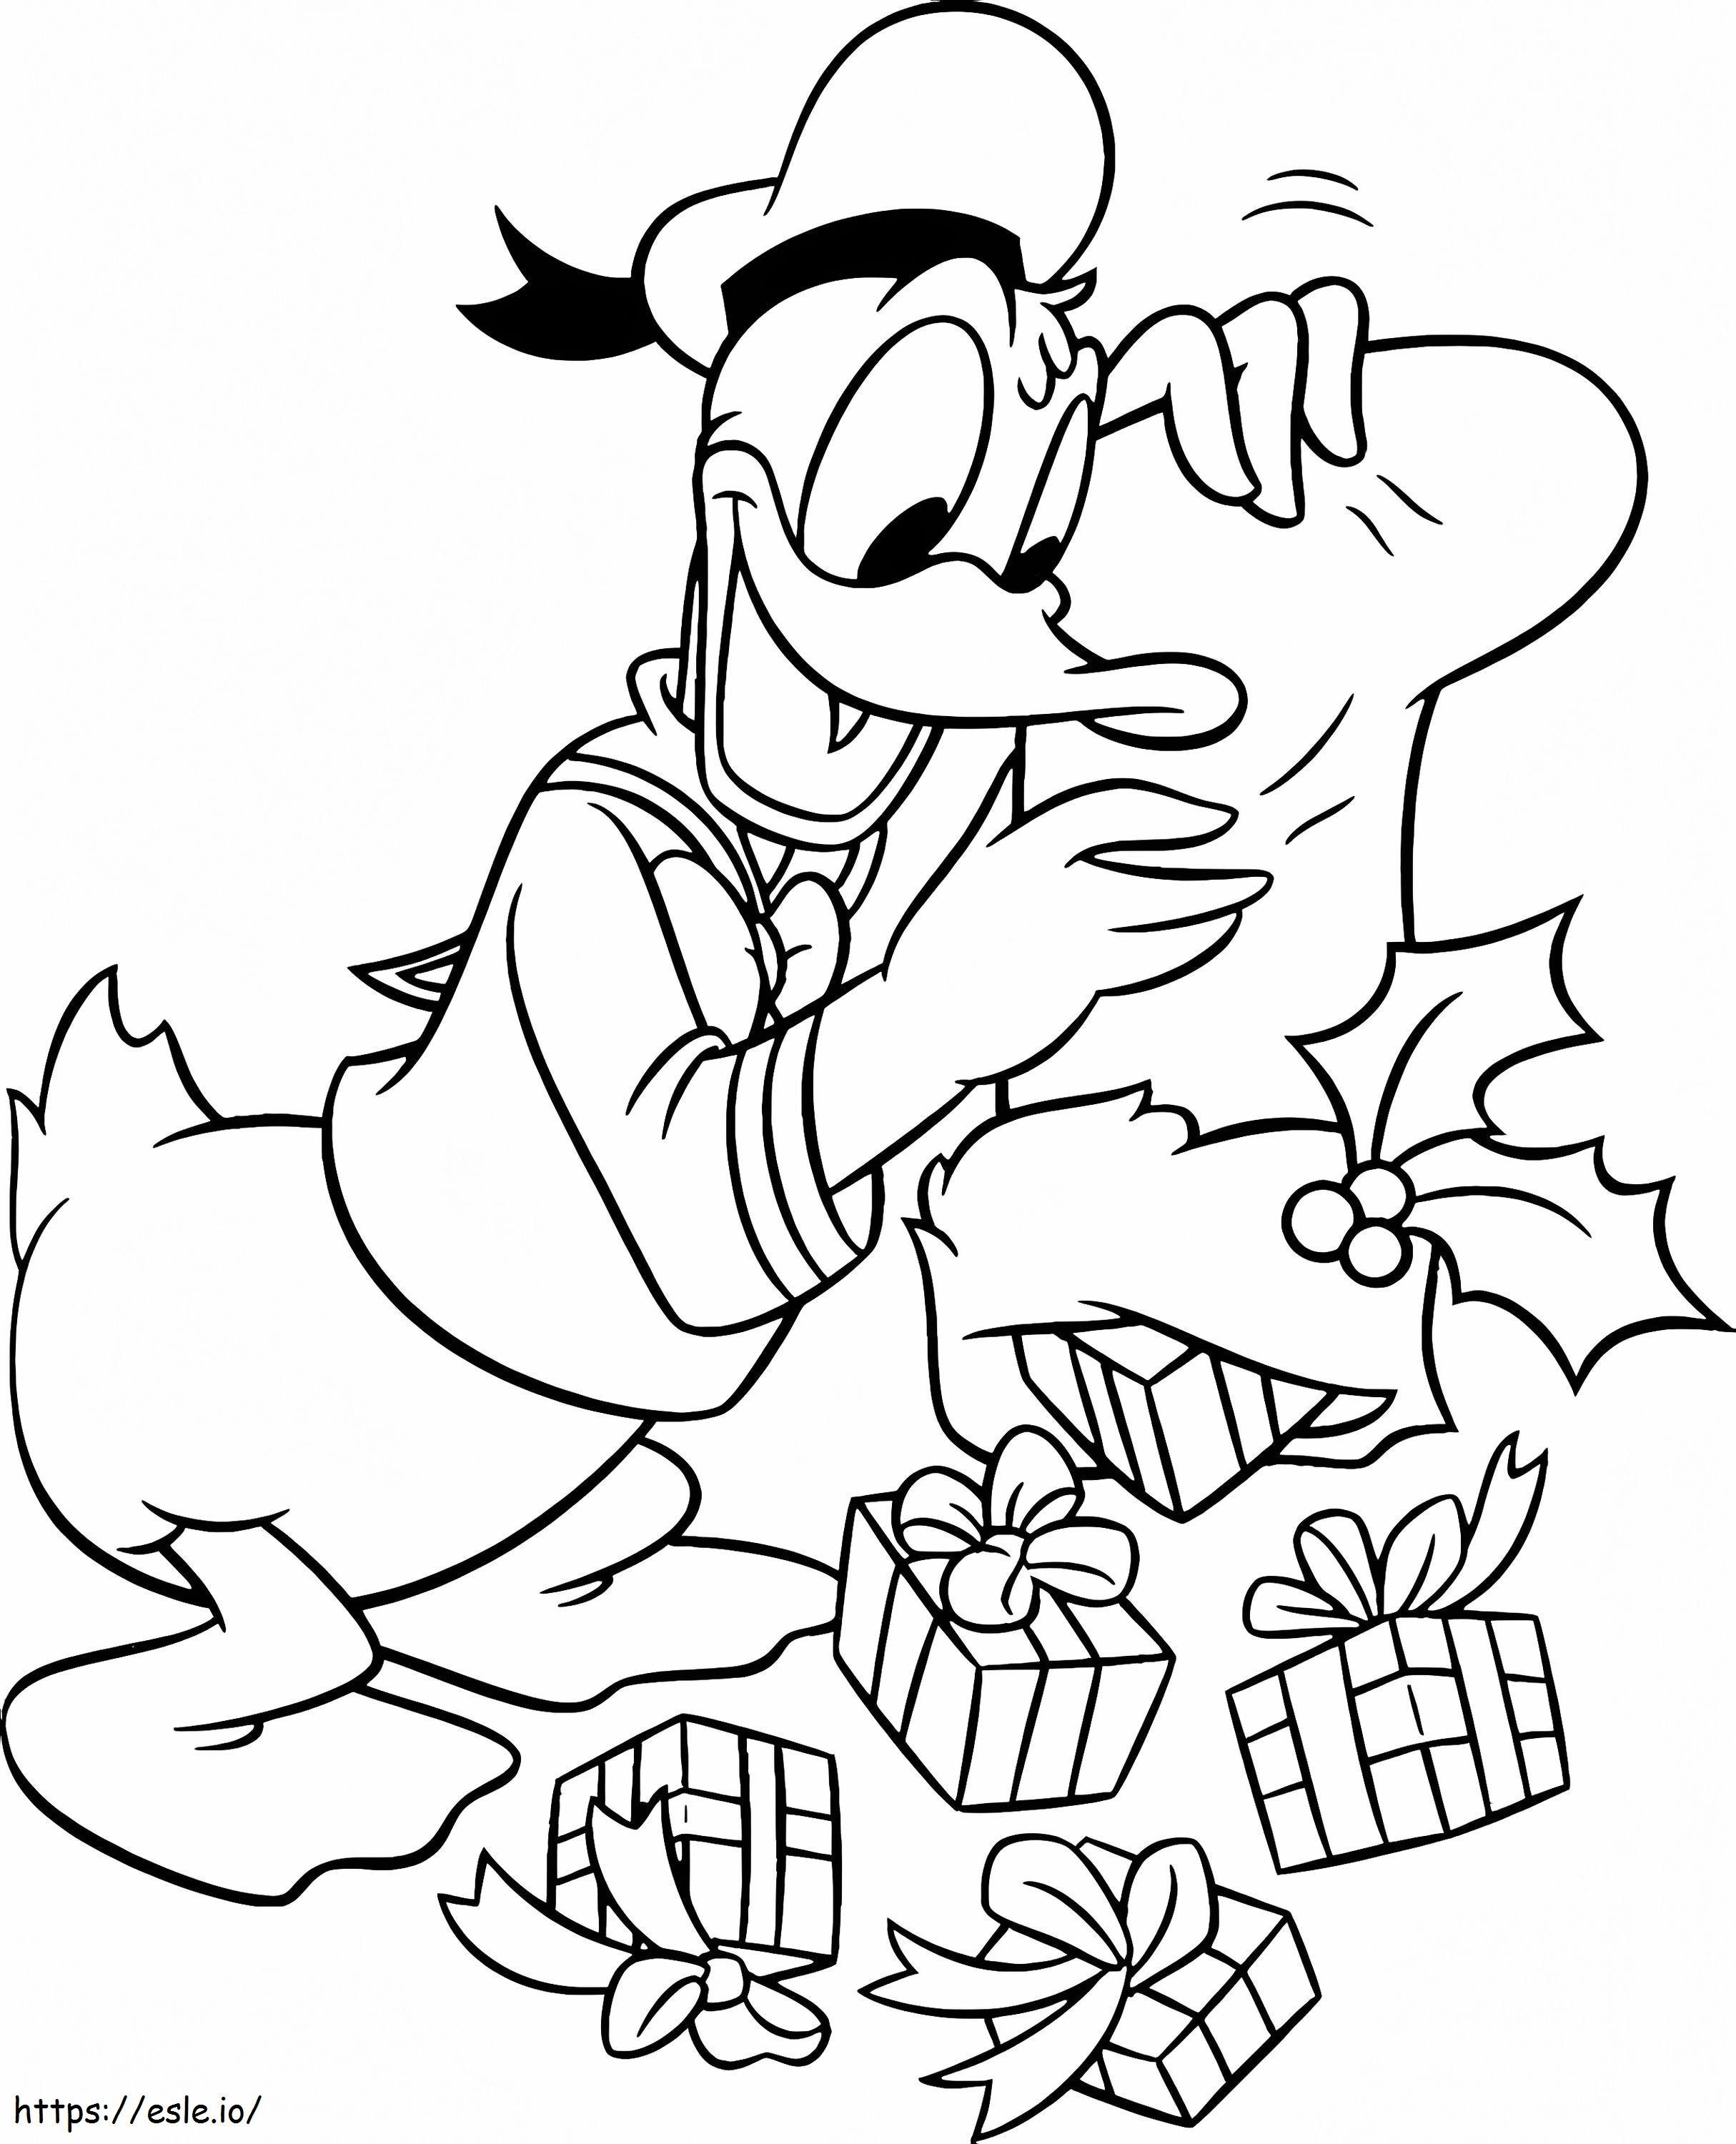 Donald Duck mit Weihnachtsgeschenken ausmalbilder